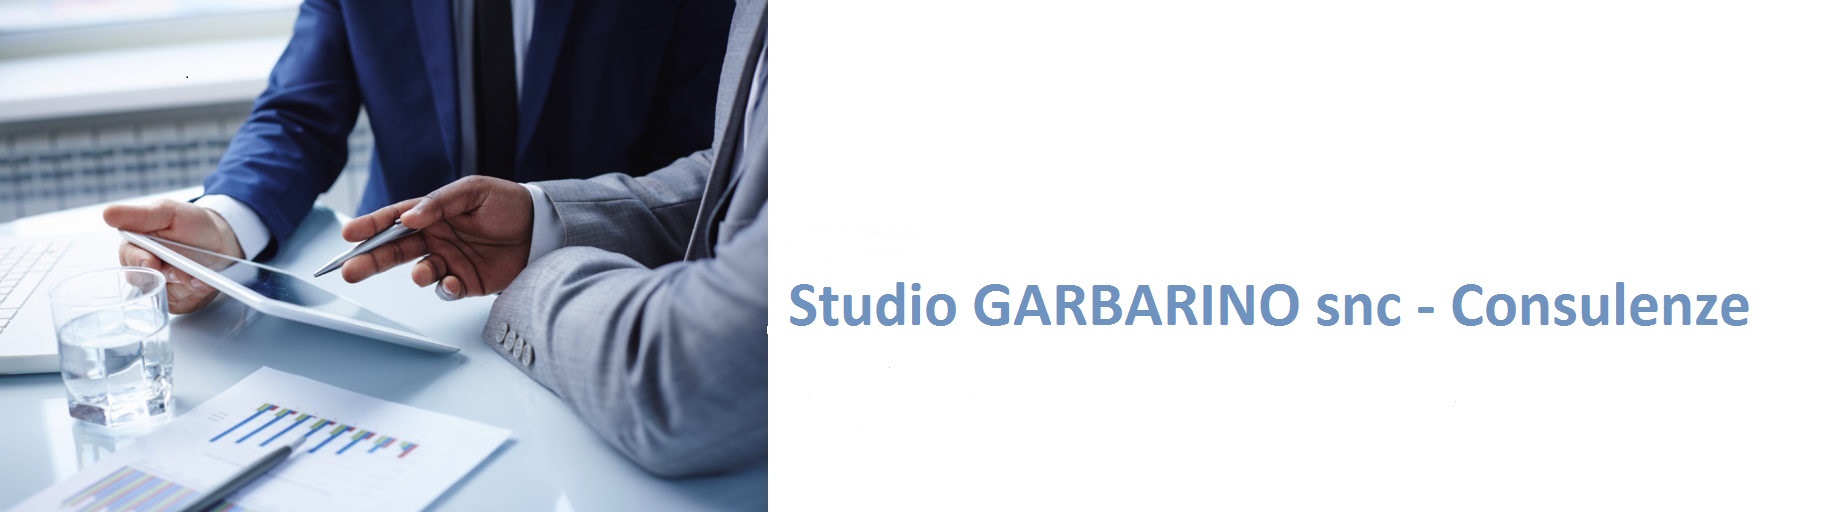 Studio GARBARINO snc Consulenze - Canelli